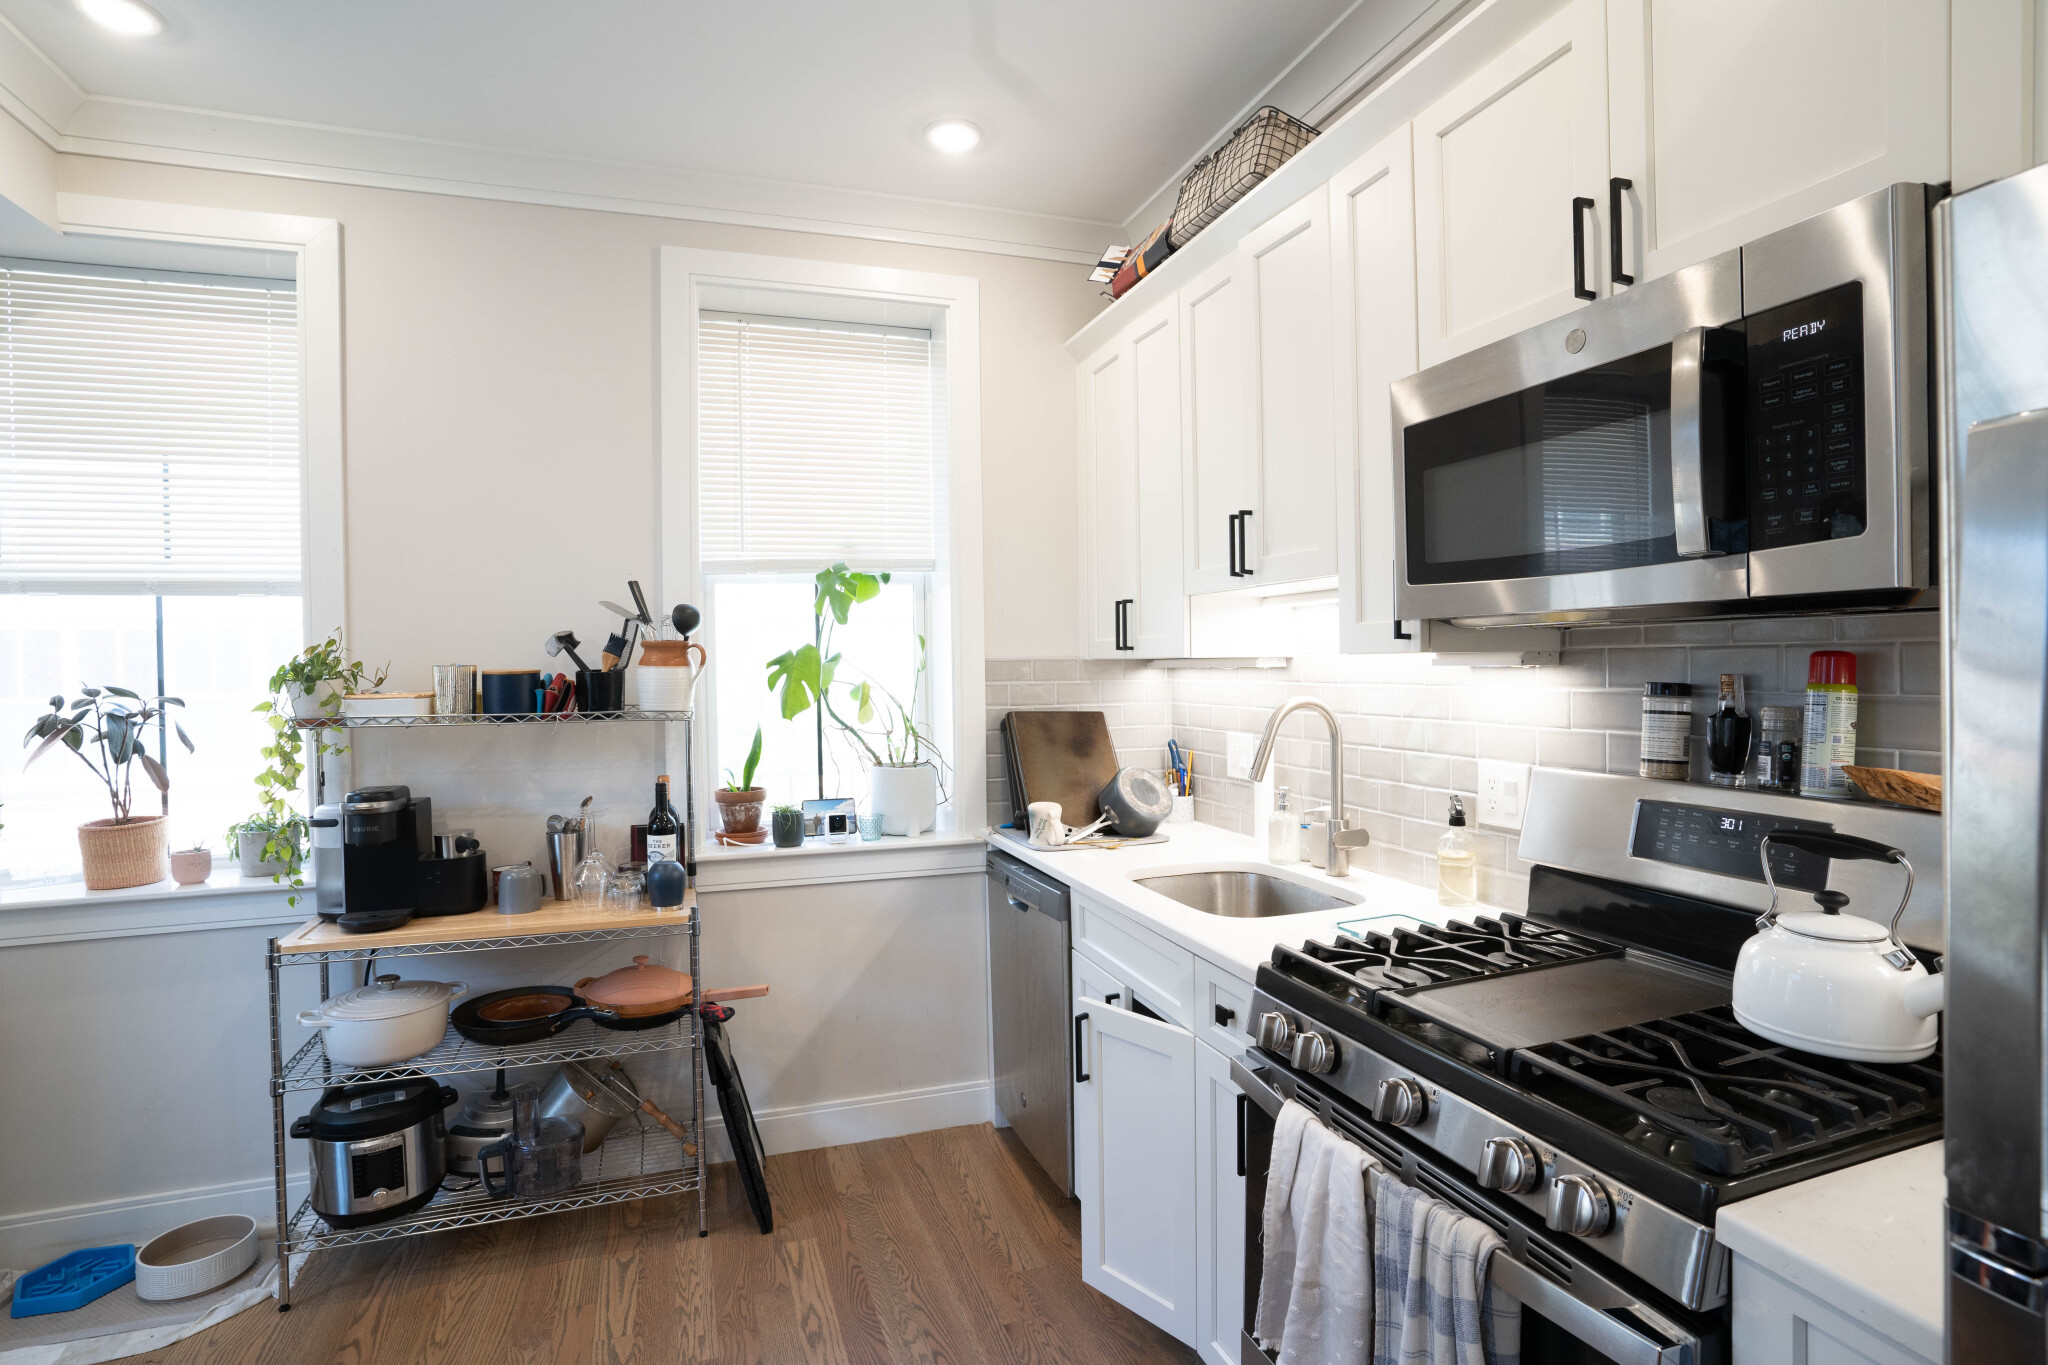 Photos of apartment on Porter St.,Boston MA 02128